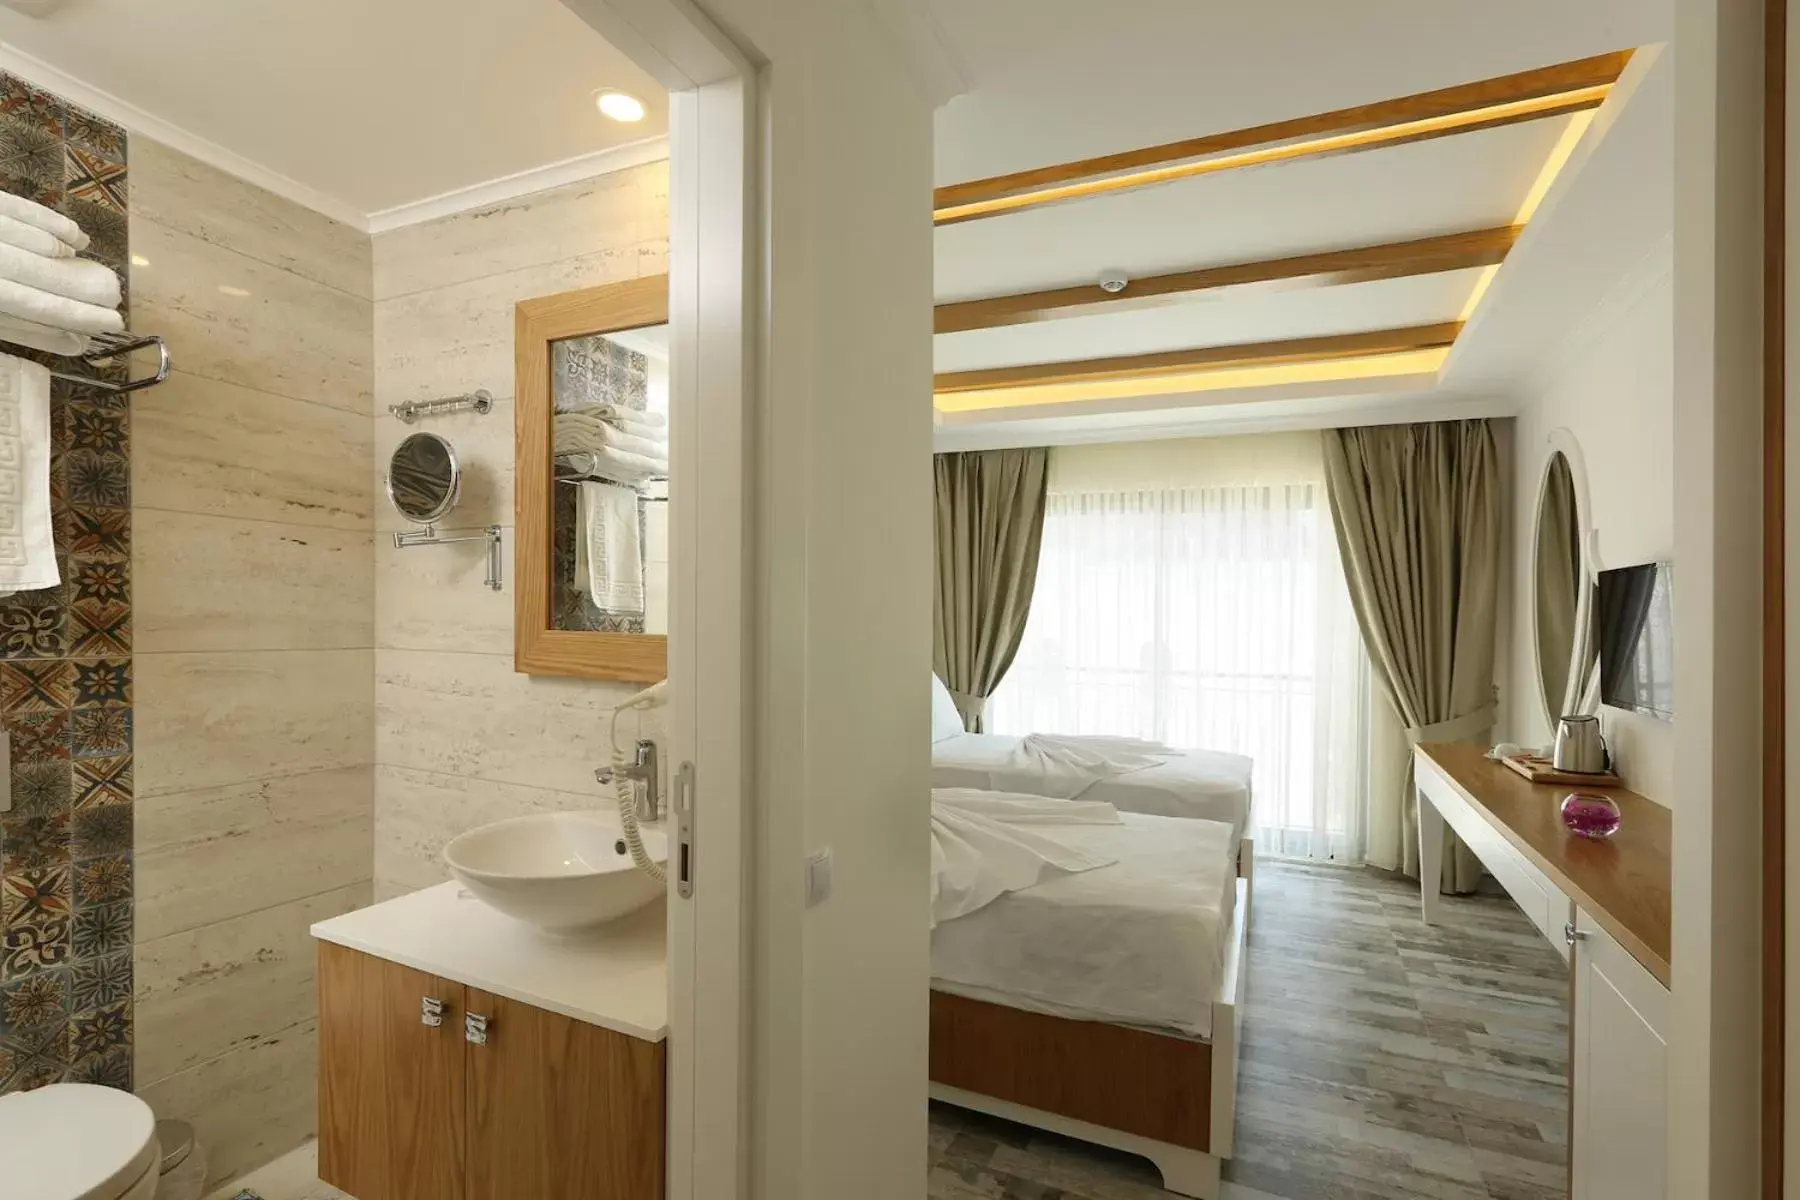 Bathroom in Payam Hotel